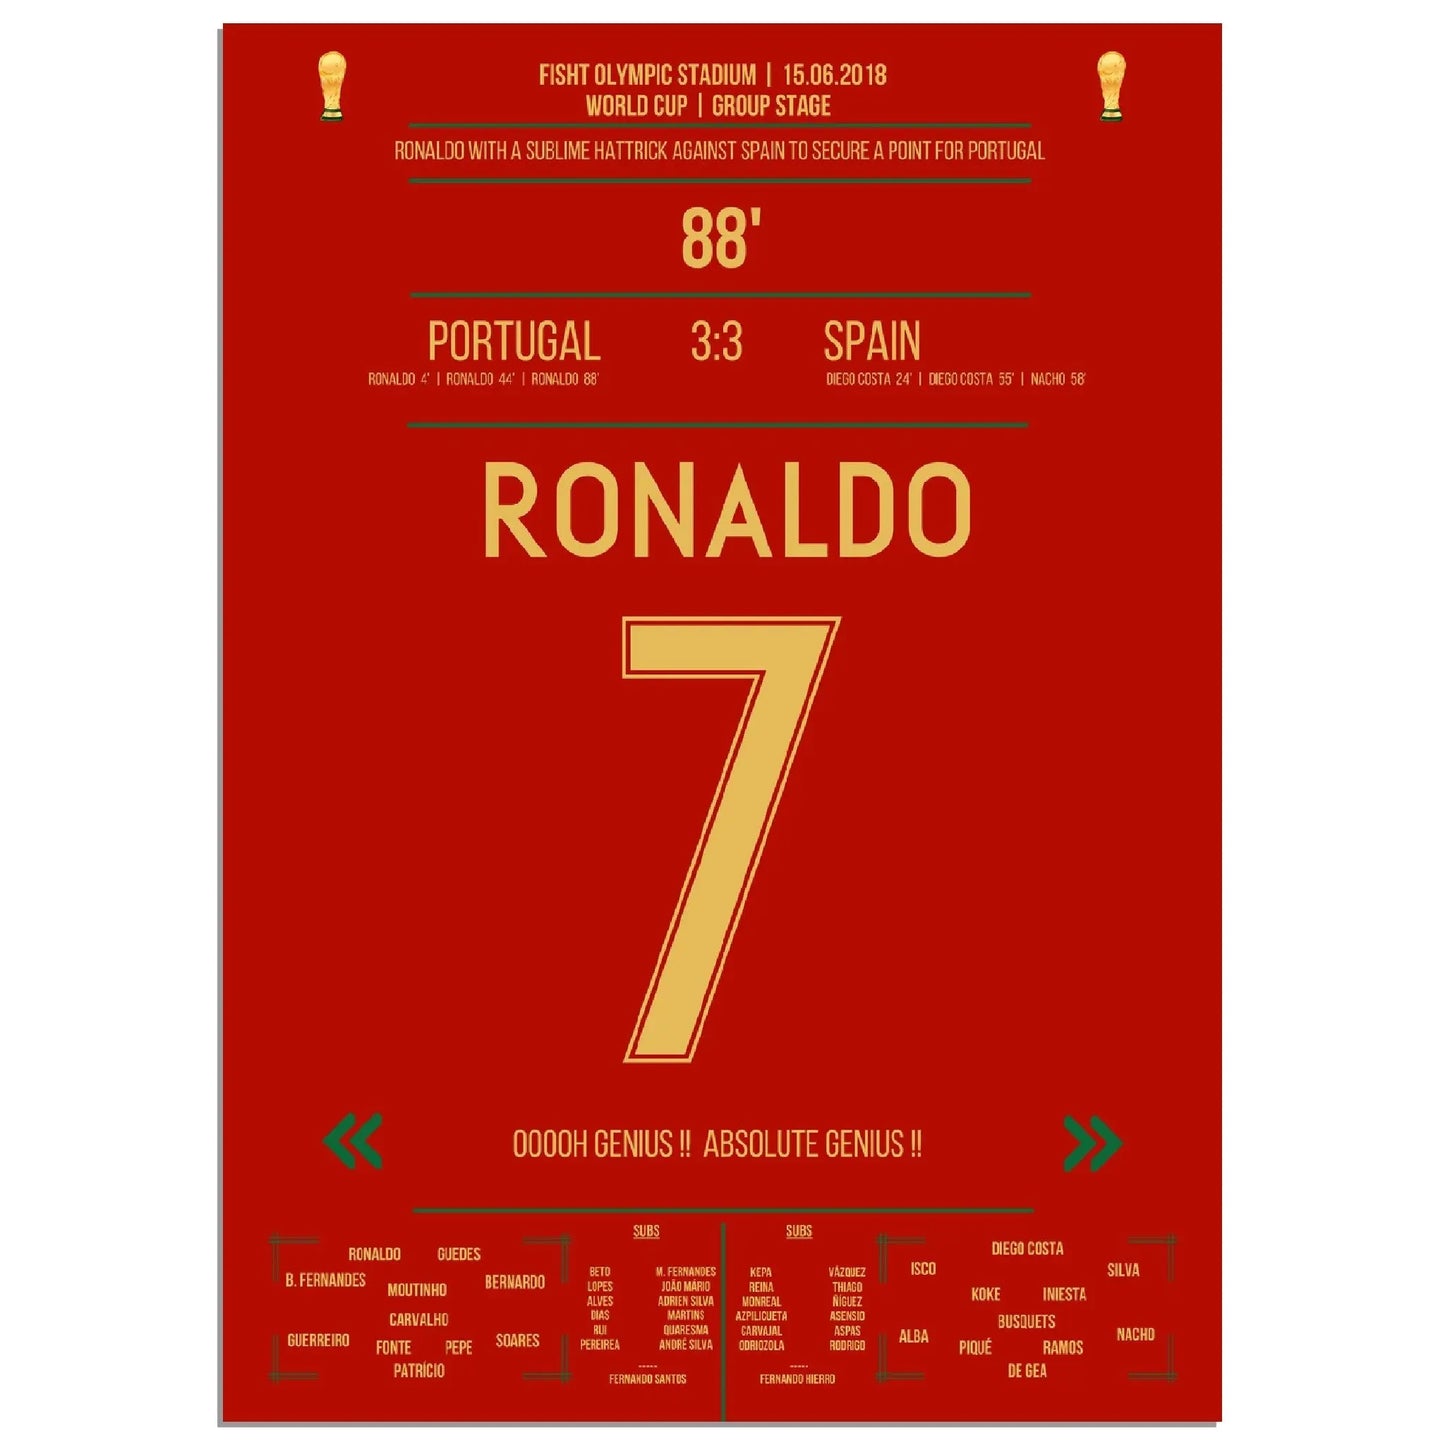 Ronaldos Hattrick sichert Portugal einen Punkt gegen Spanien bei der Weltmeisterschaft 2018 